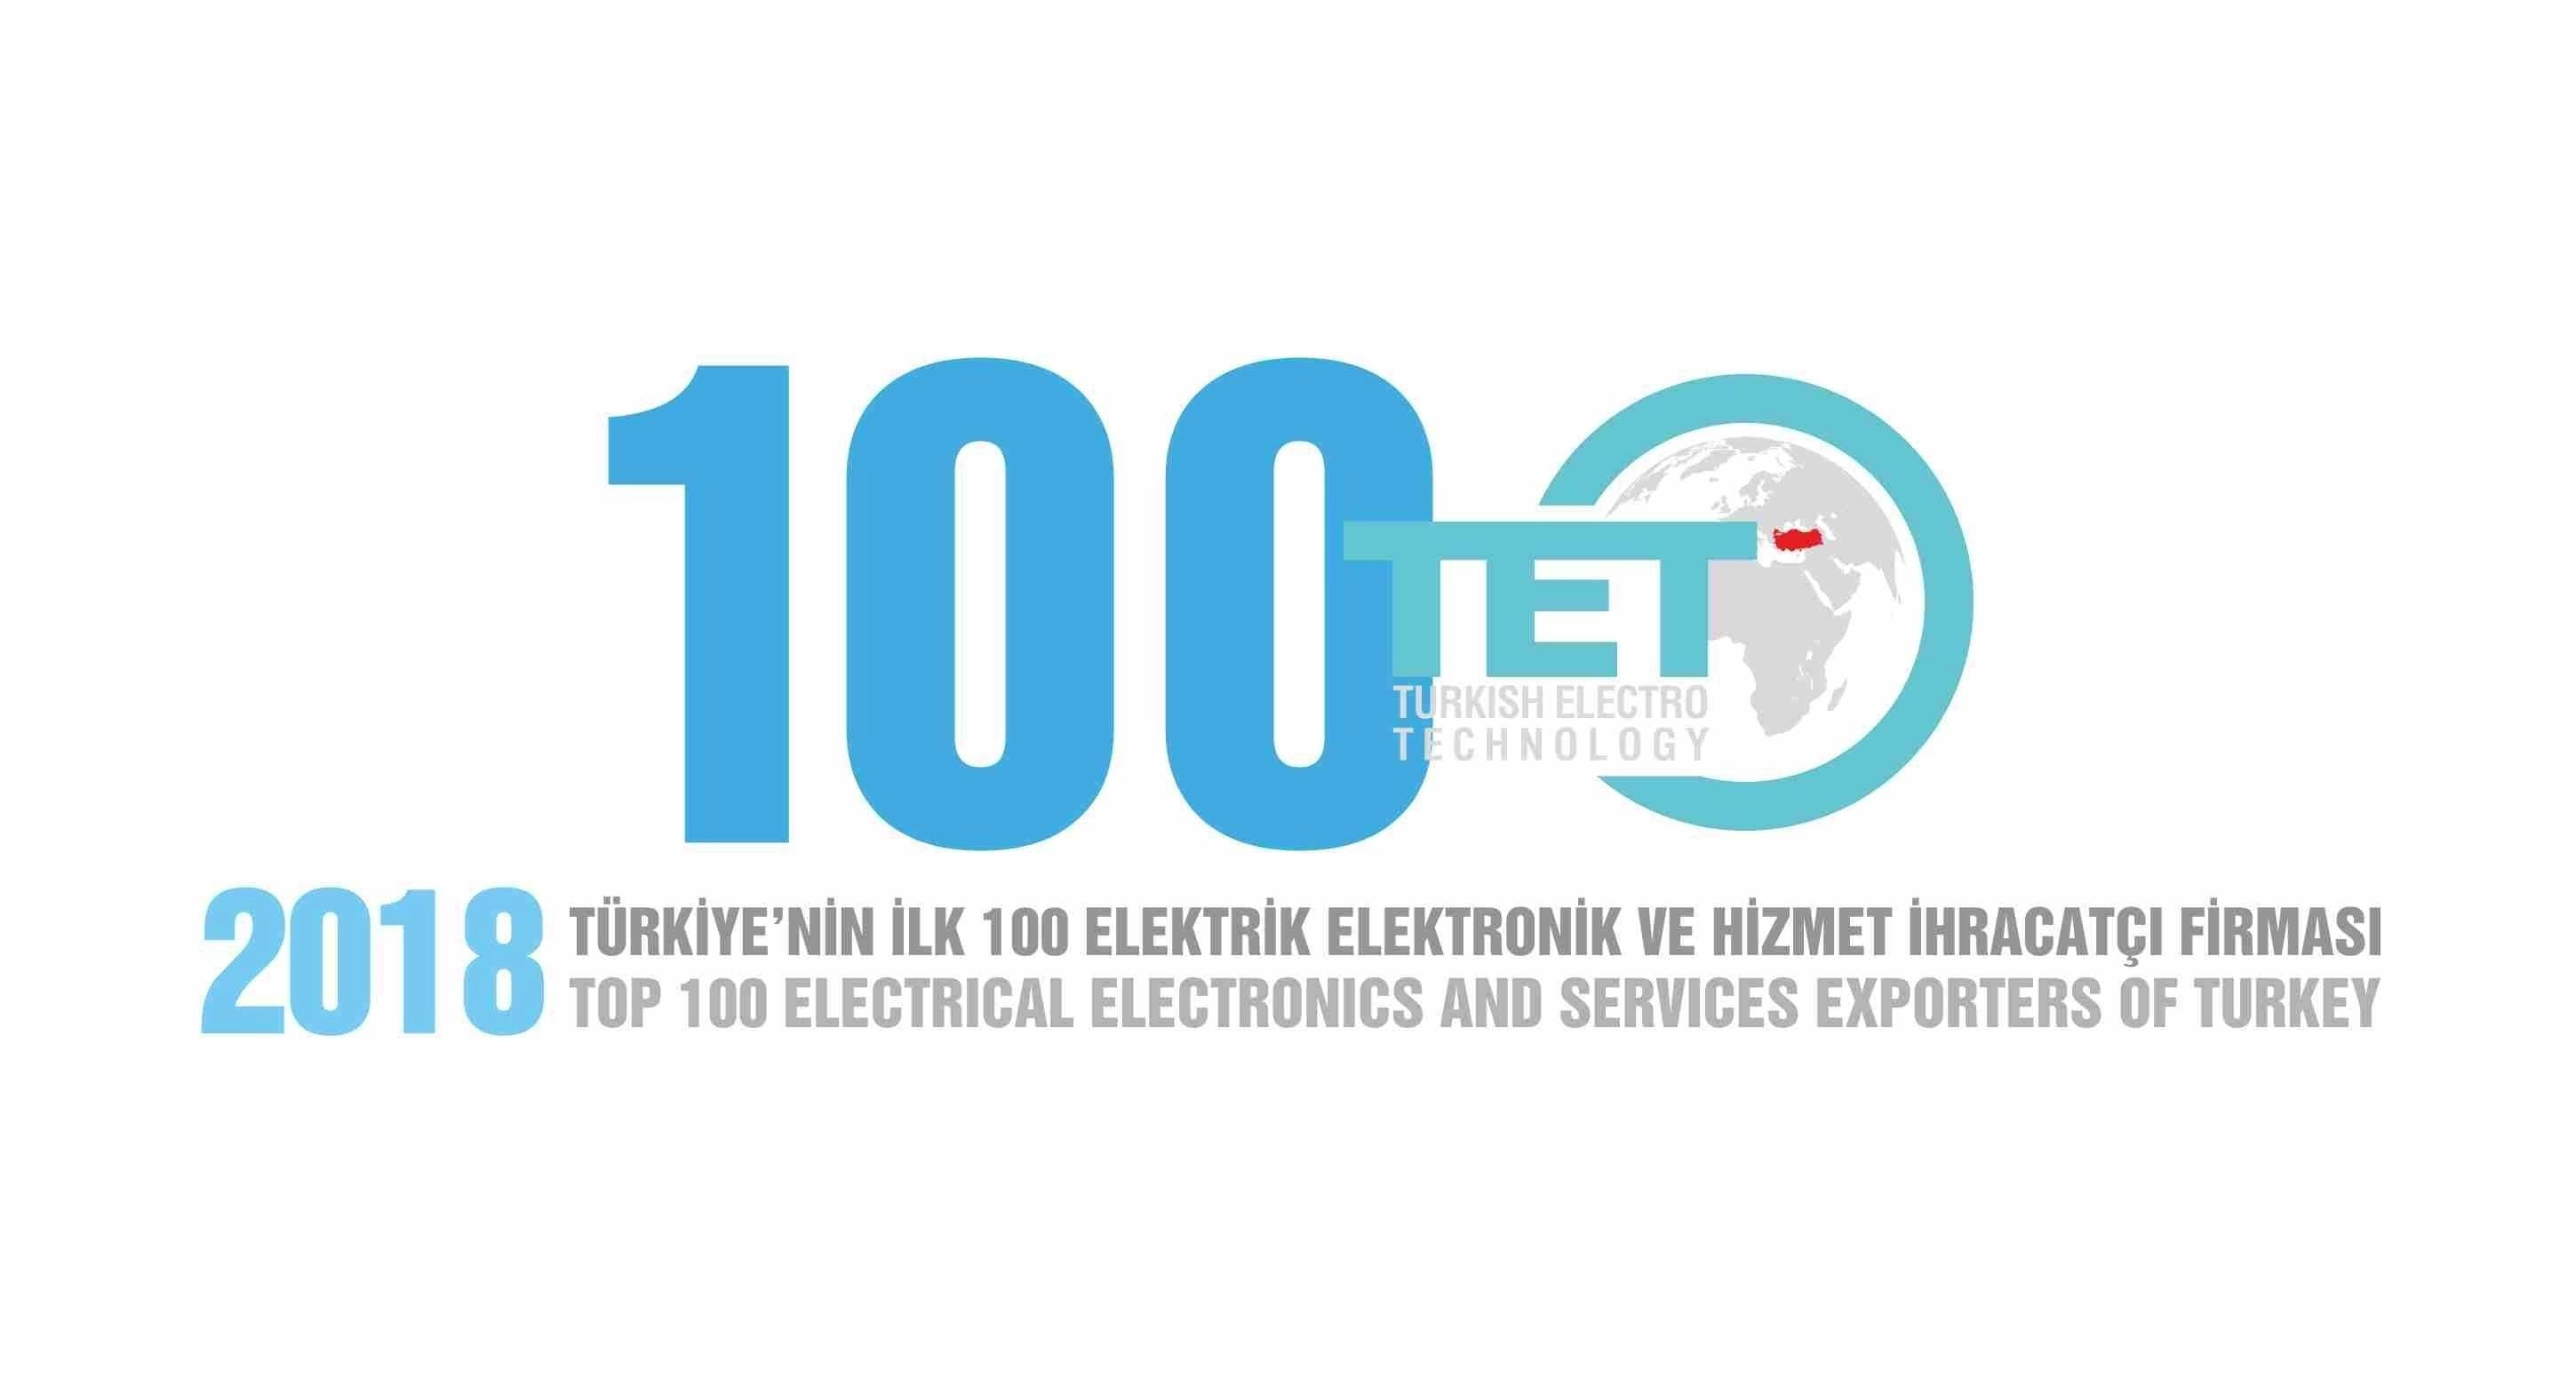 Nous avons le plaisir de vous informer que EMSA a été élue l'un des 100 meilleurs exportateurs de services électriques et électroniques en Turquie pour l’an 2018.